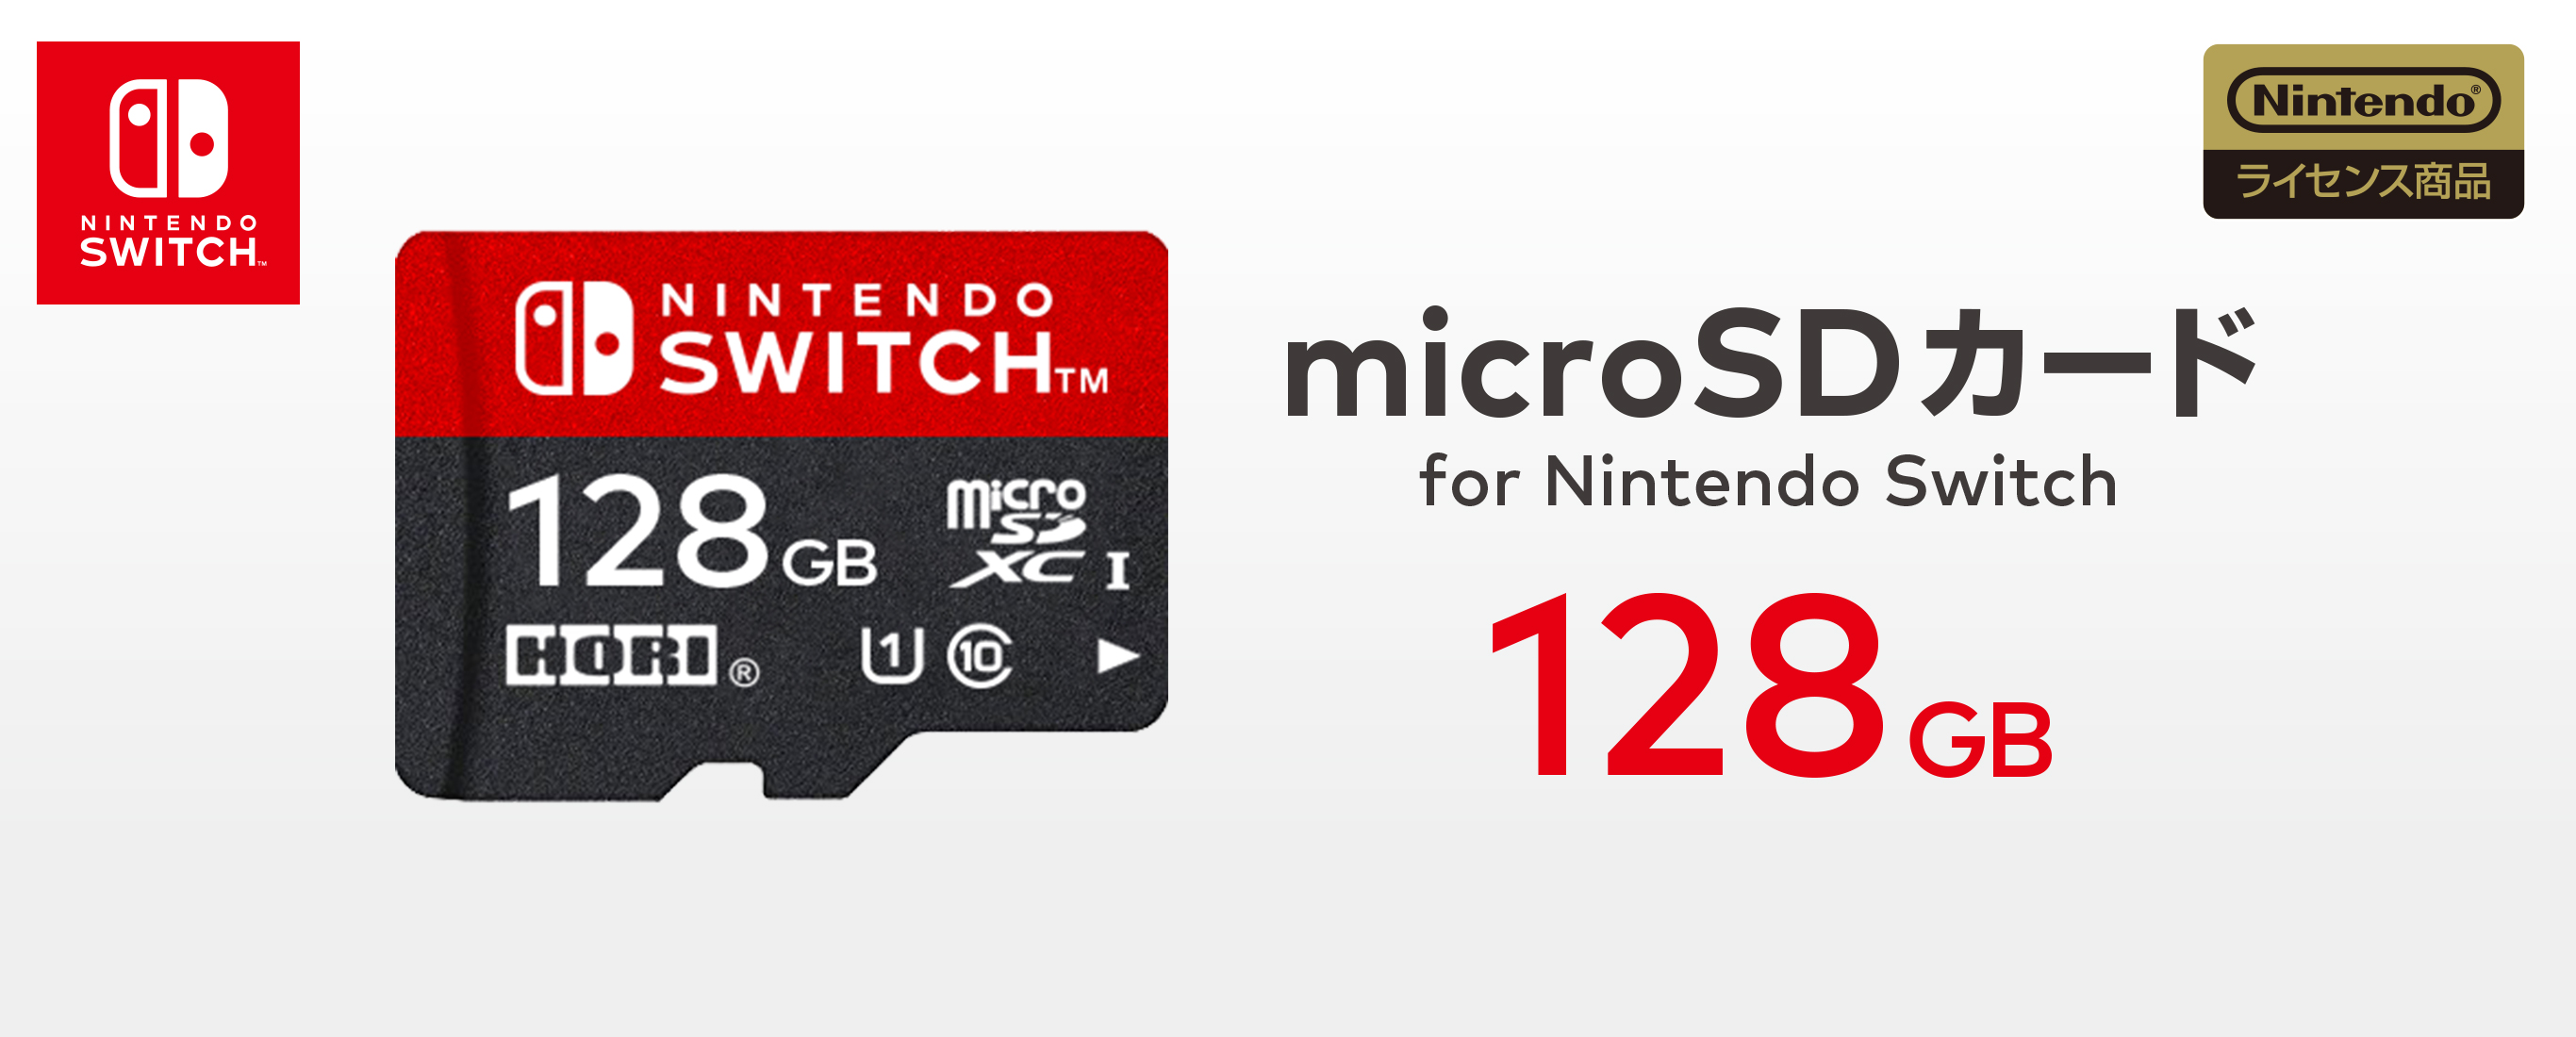 株式会社 Hori Microsdカード For Nintendo Switch 128gb